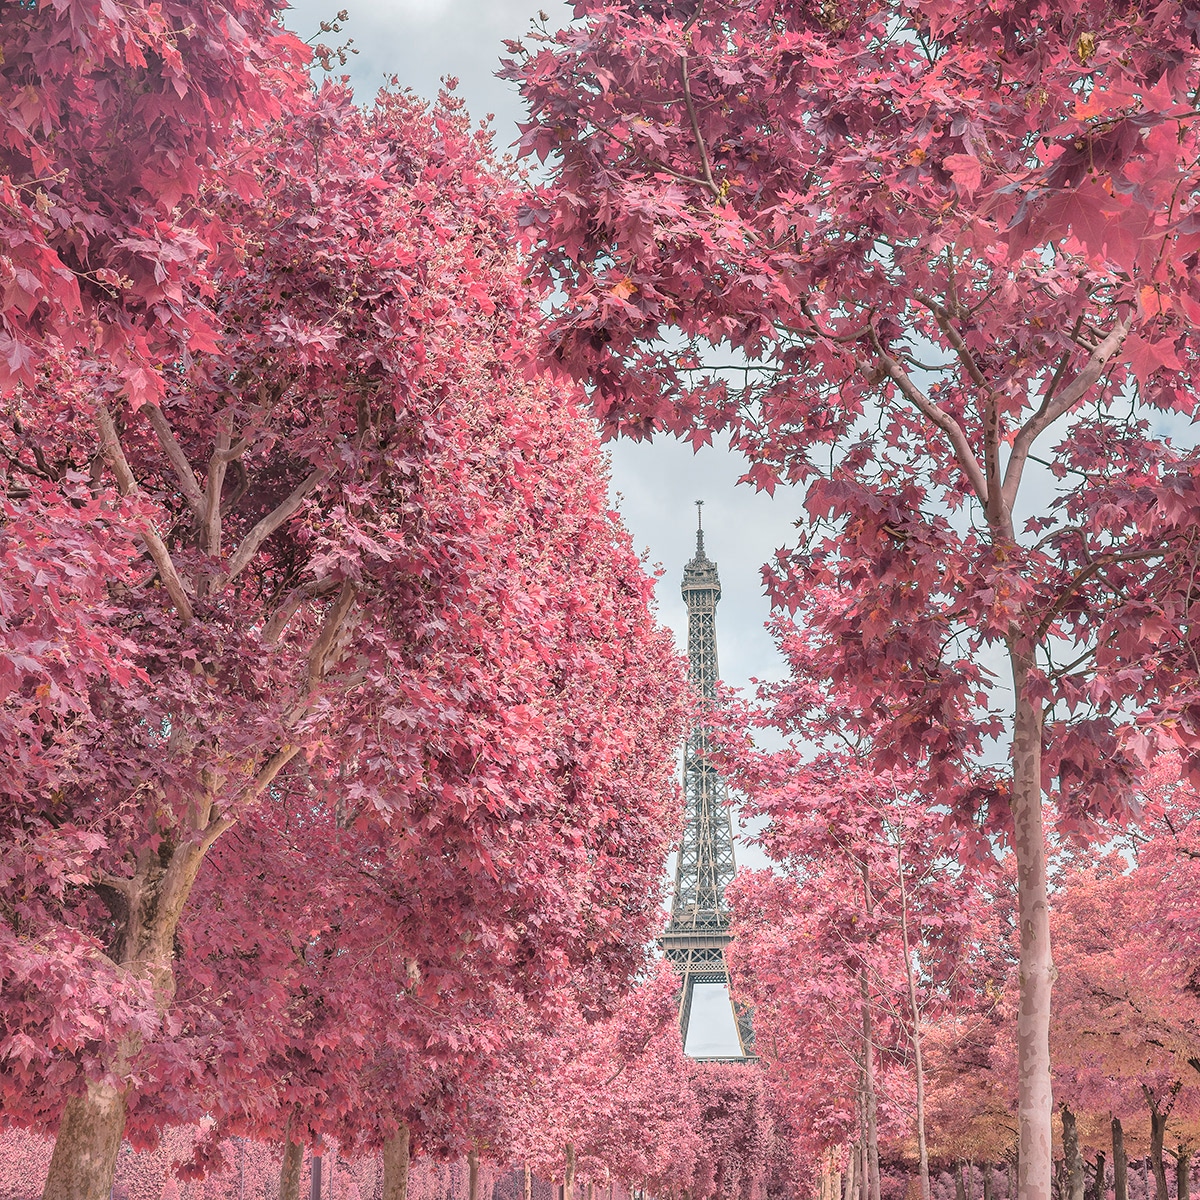 Paris in Infrared